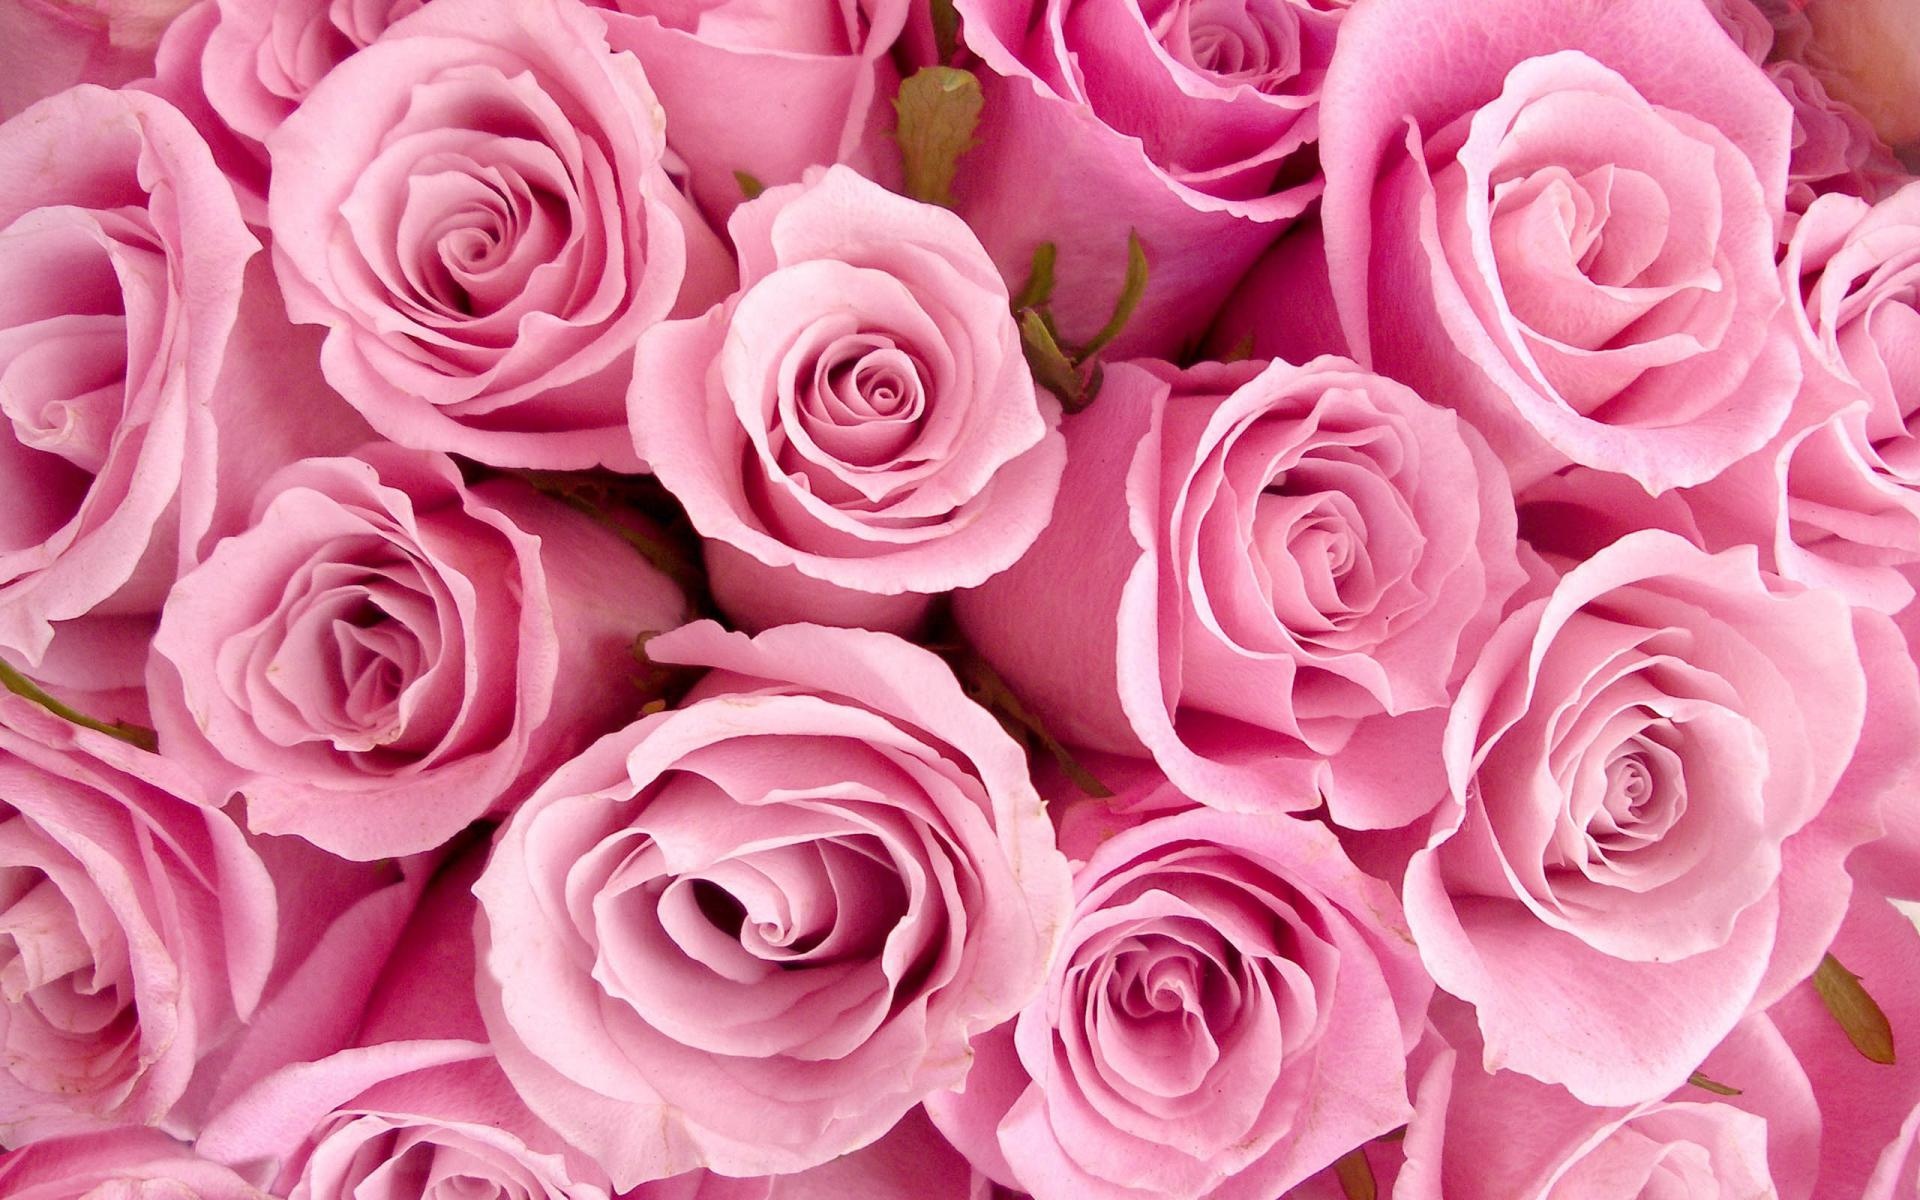 Ảnh Valentine với hoa hồng đỏ sẽ mang lại cho bạn cảm giác tuyệt vời và thể hiện tình yêu sâu đậm của bạn đối với người ấy. Hãy xem hình ảnh này và cảm nhận được tình yêu chân thành và ngọt ngào nhất!